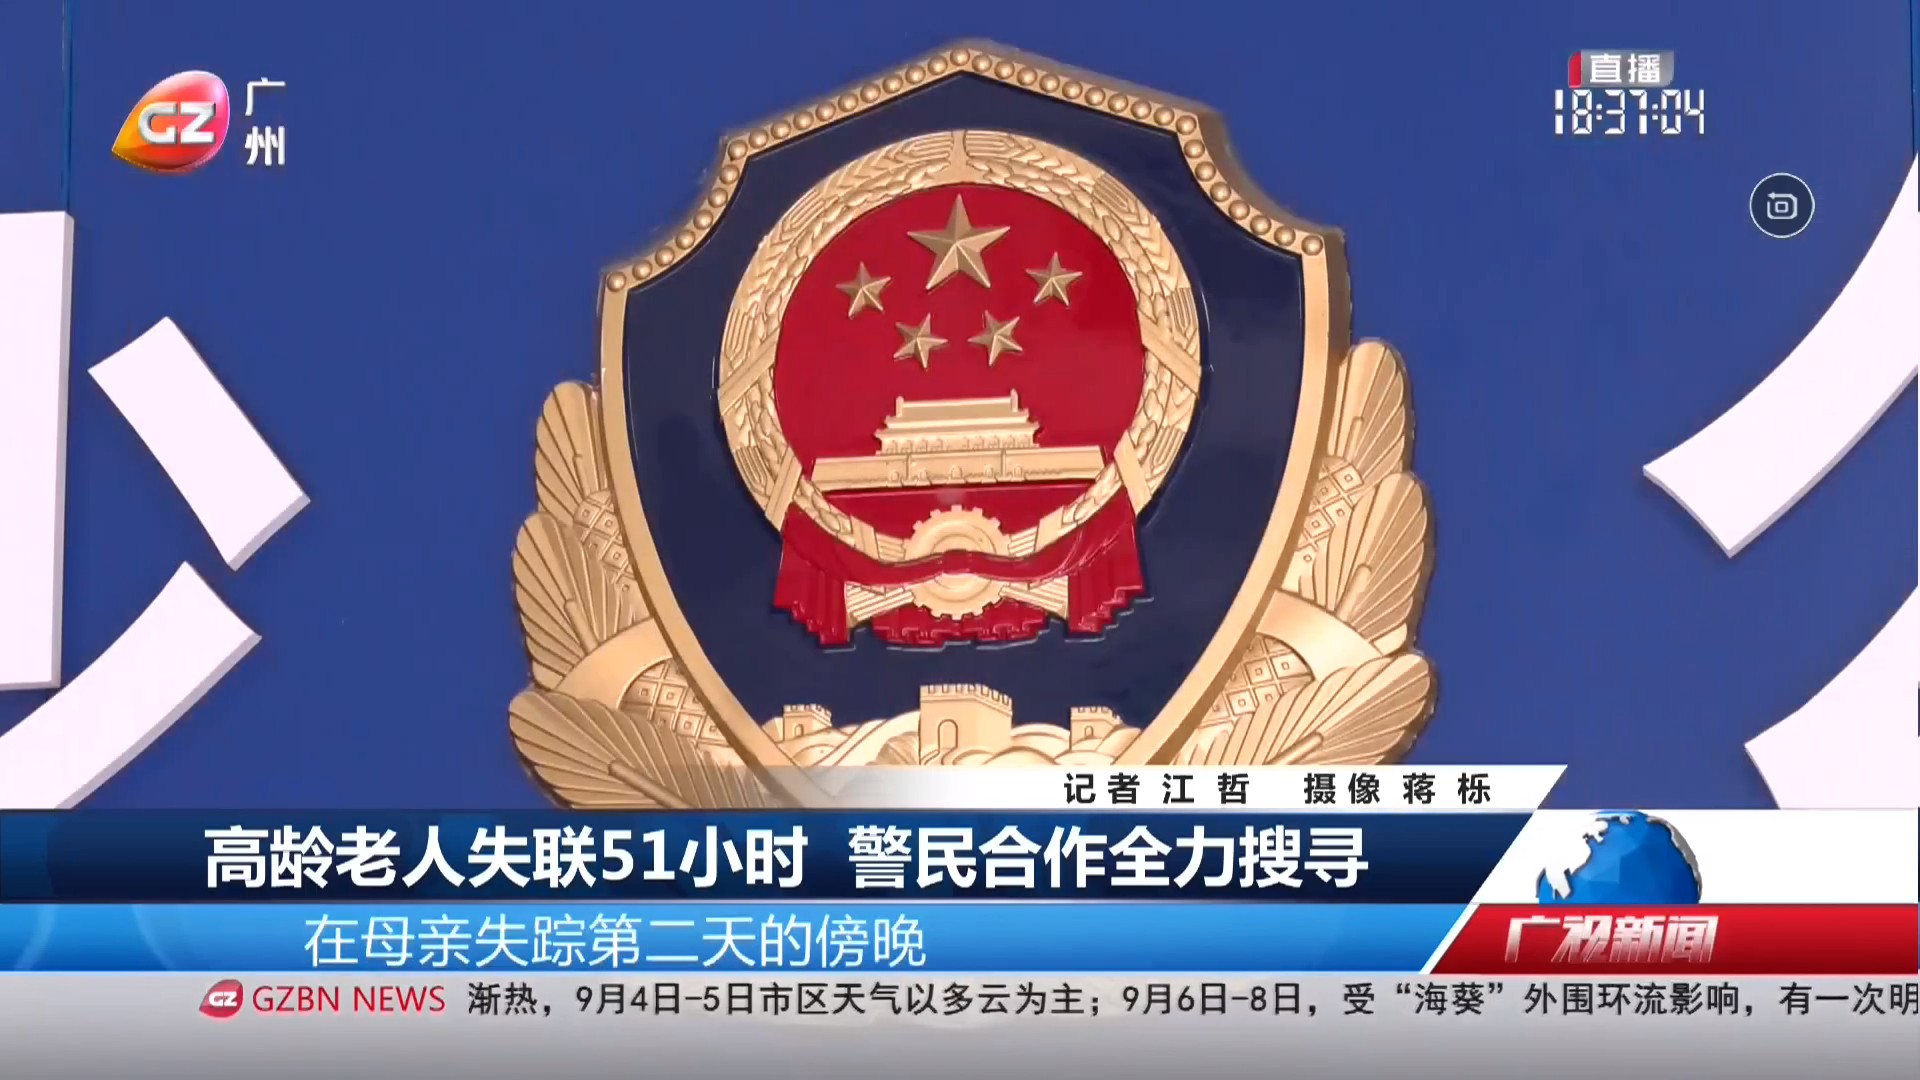 广州台综合频道 广视新闻 高龄老人失联51小时 警民合作全力搜寻